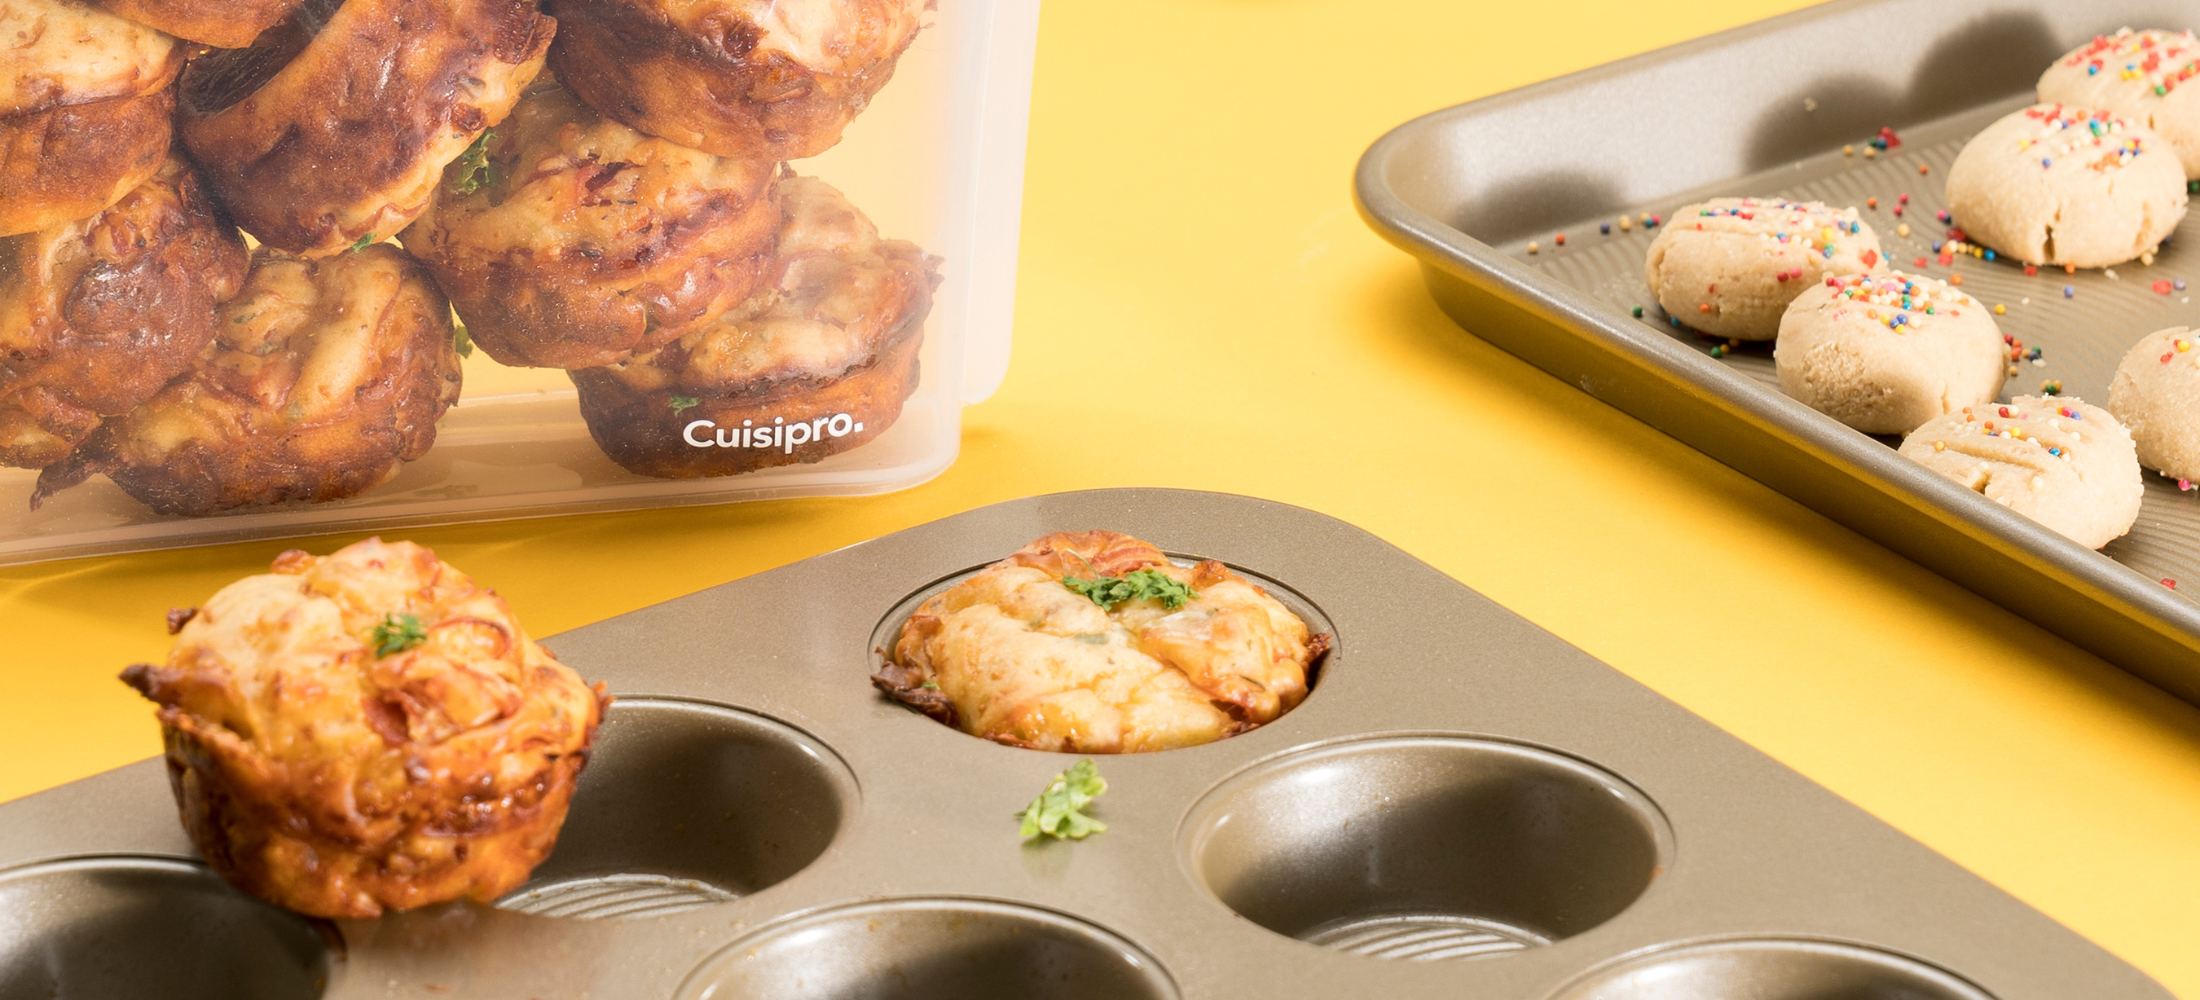 Recette de muffin à pizza Cuisipro pour les enfants. Présentation du muffin à pizza cuit, dans le moule à muffin Cuisipro et dans le sac réutilisable Cuisipro.